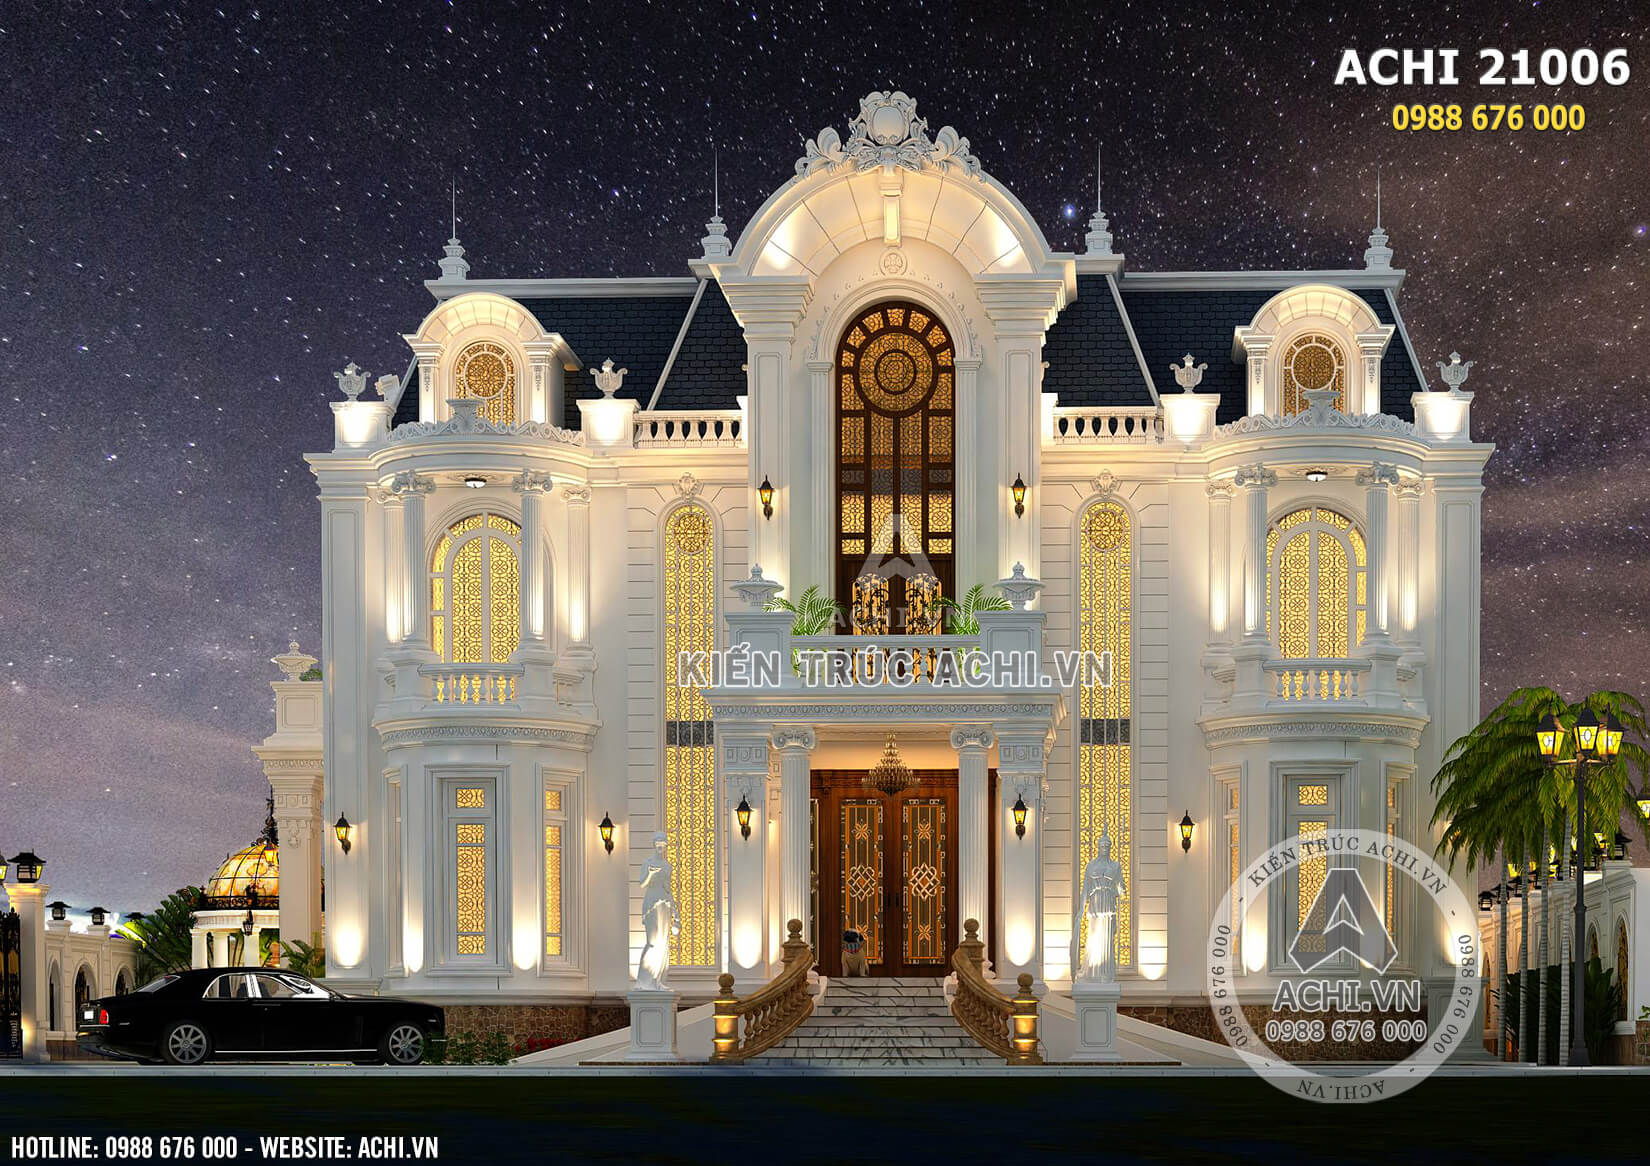 Phối cảnh 3D bản thiết kế biệt thự tân cổ điển đẹp 3 tầng - Mã số: ACHI21006